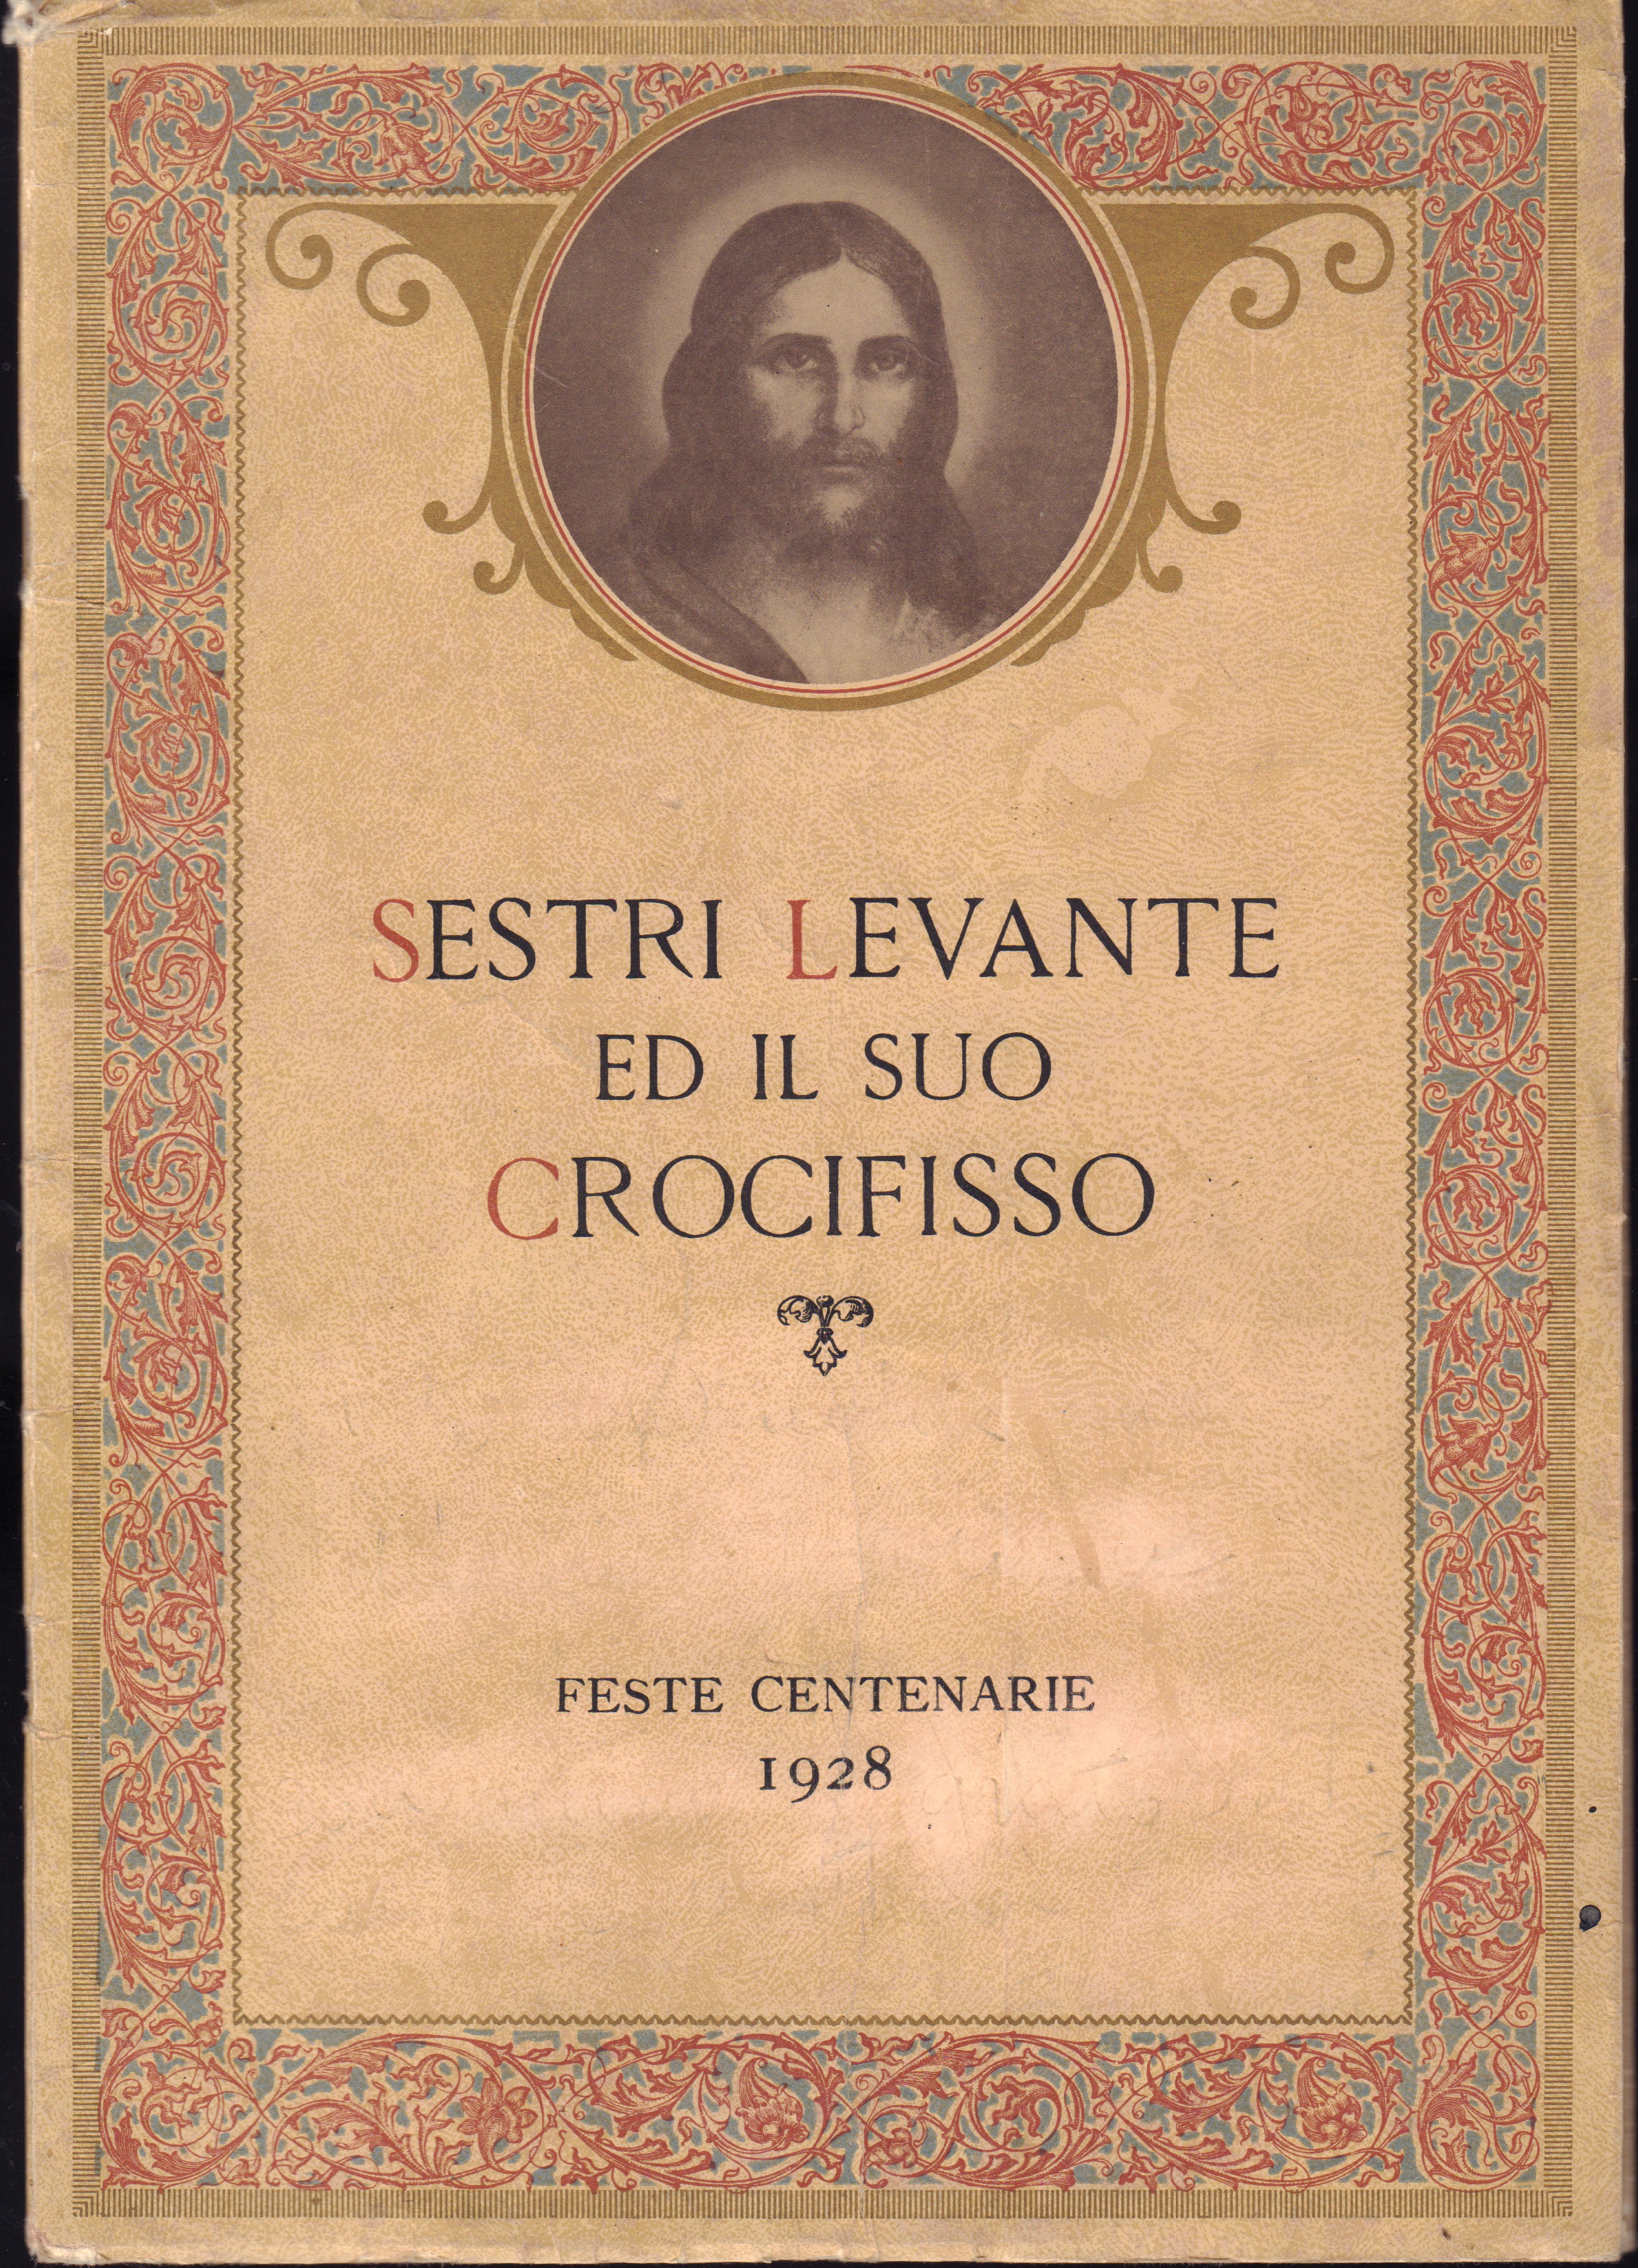 Sestri Levante ed il suo Crocifisso-Feste centenarie 1928